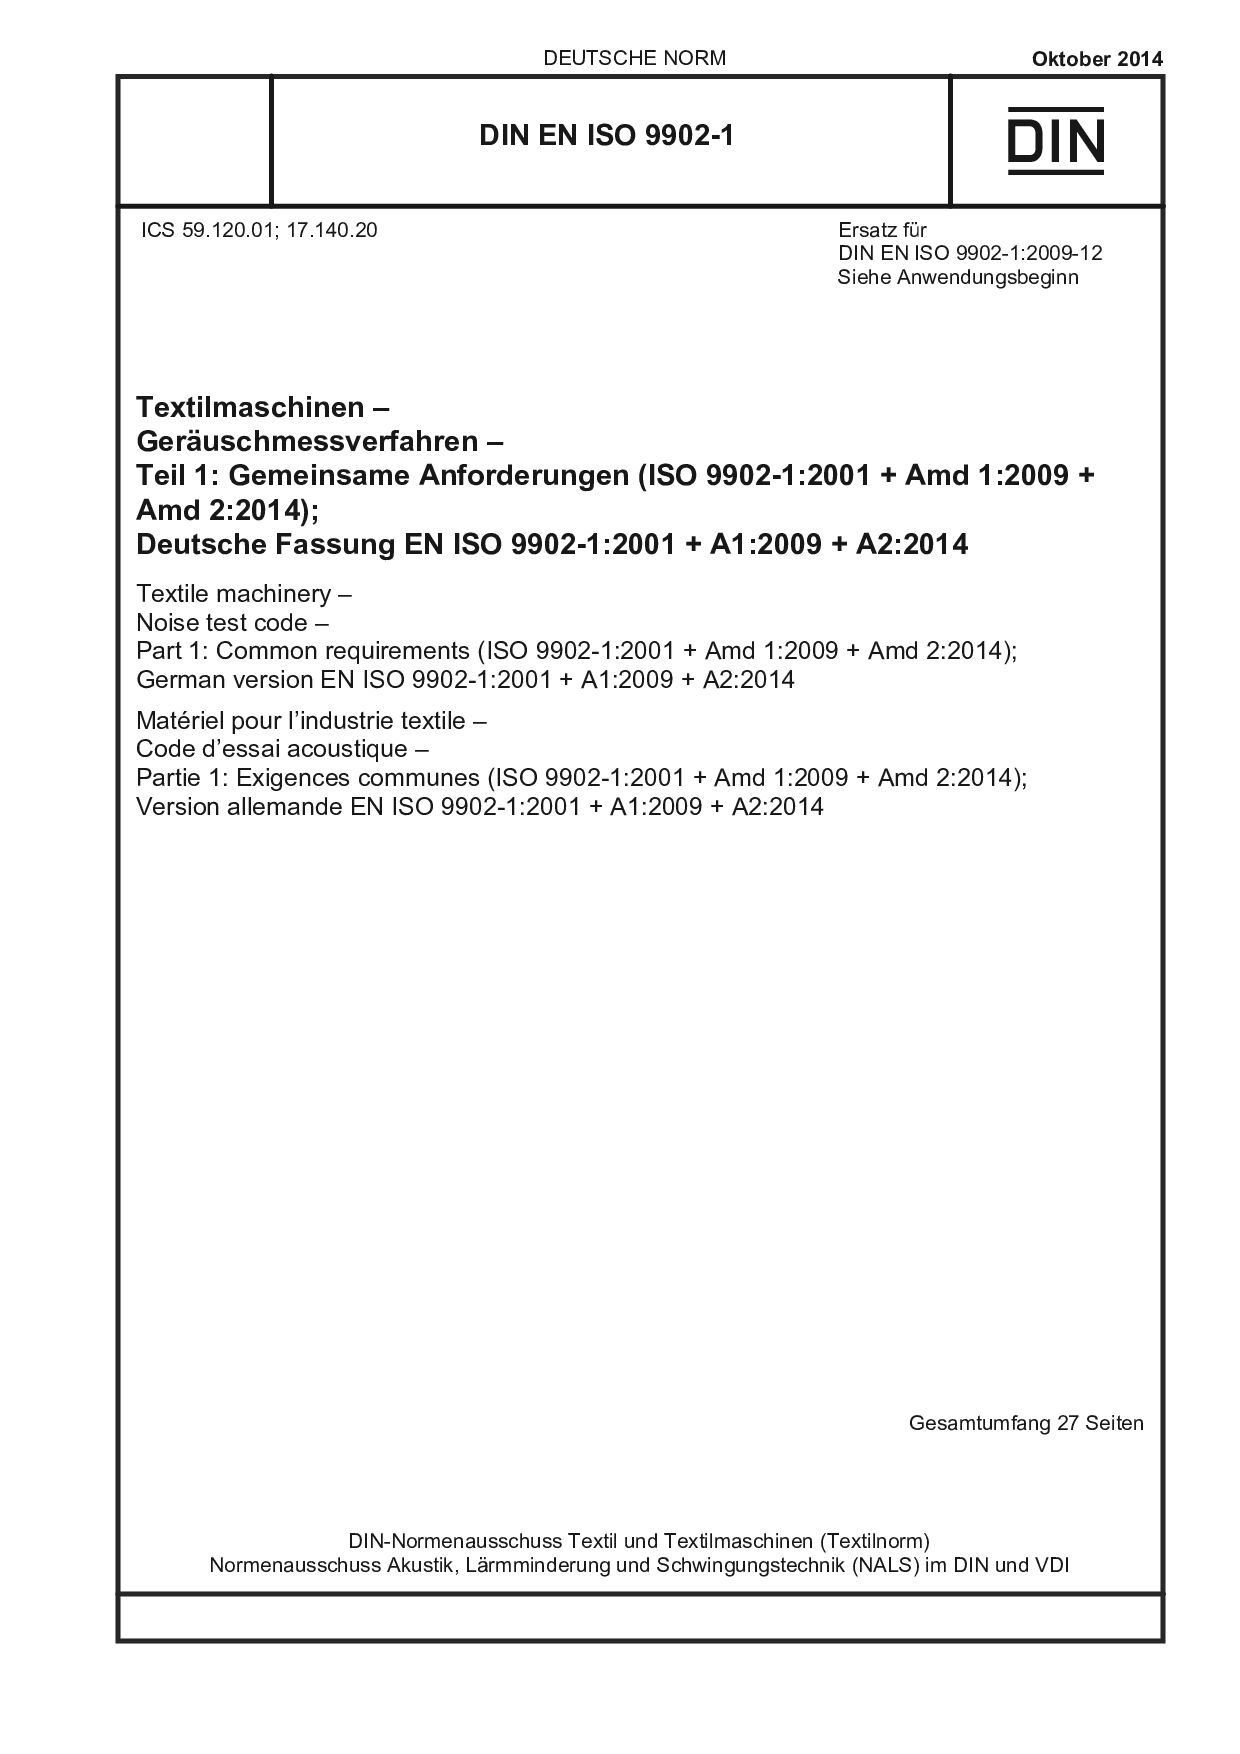 DIN EN ISO 9902-1:2014